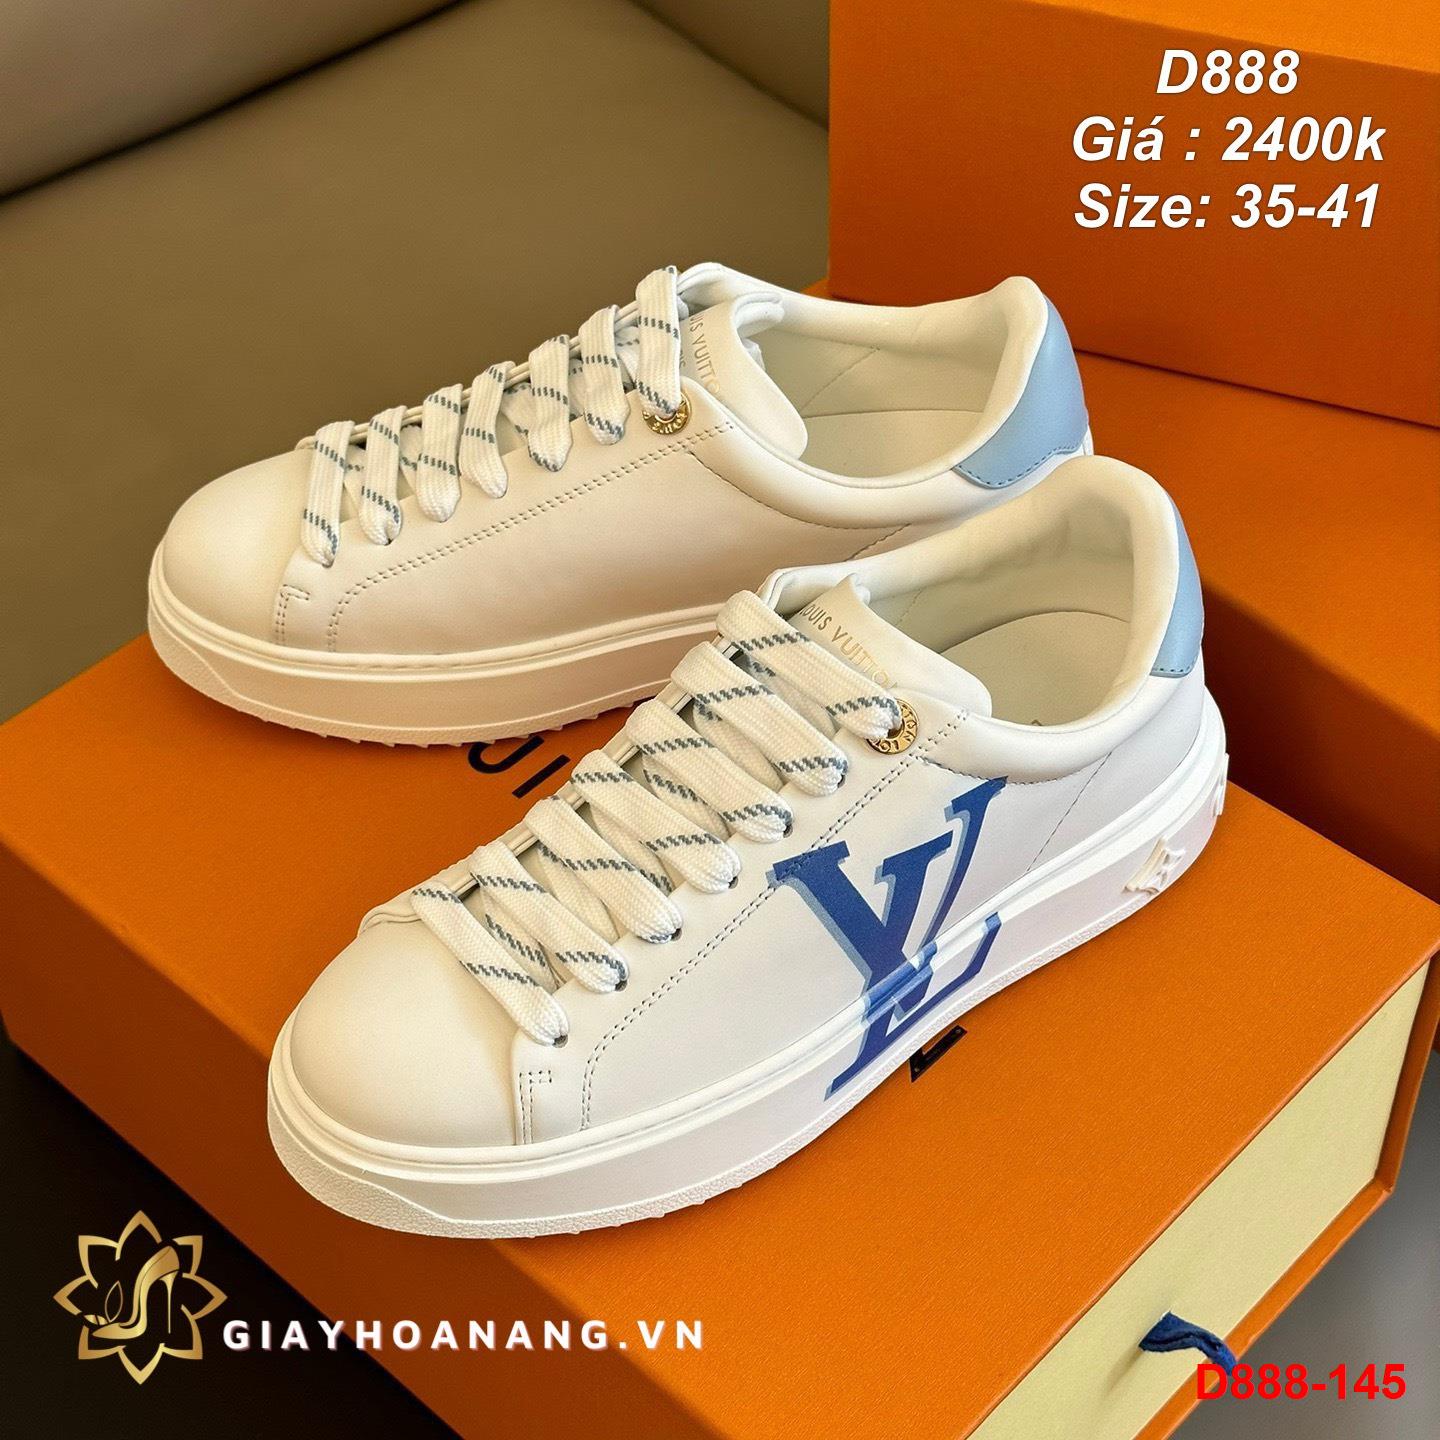 D888-145 Louis Vuitton giày thể thao siêu cấp